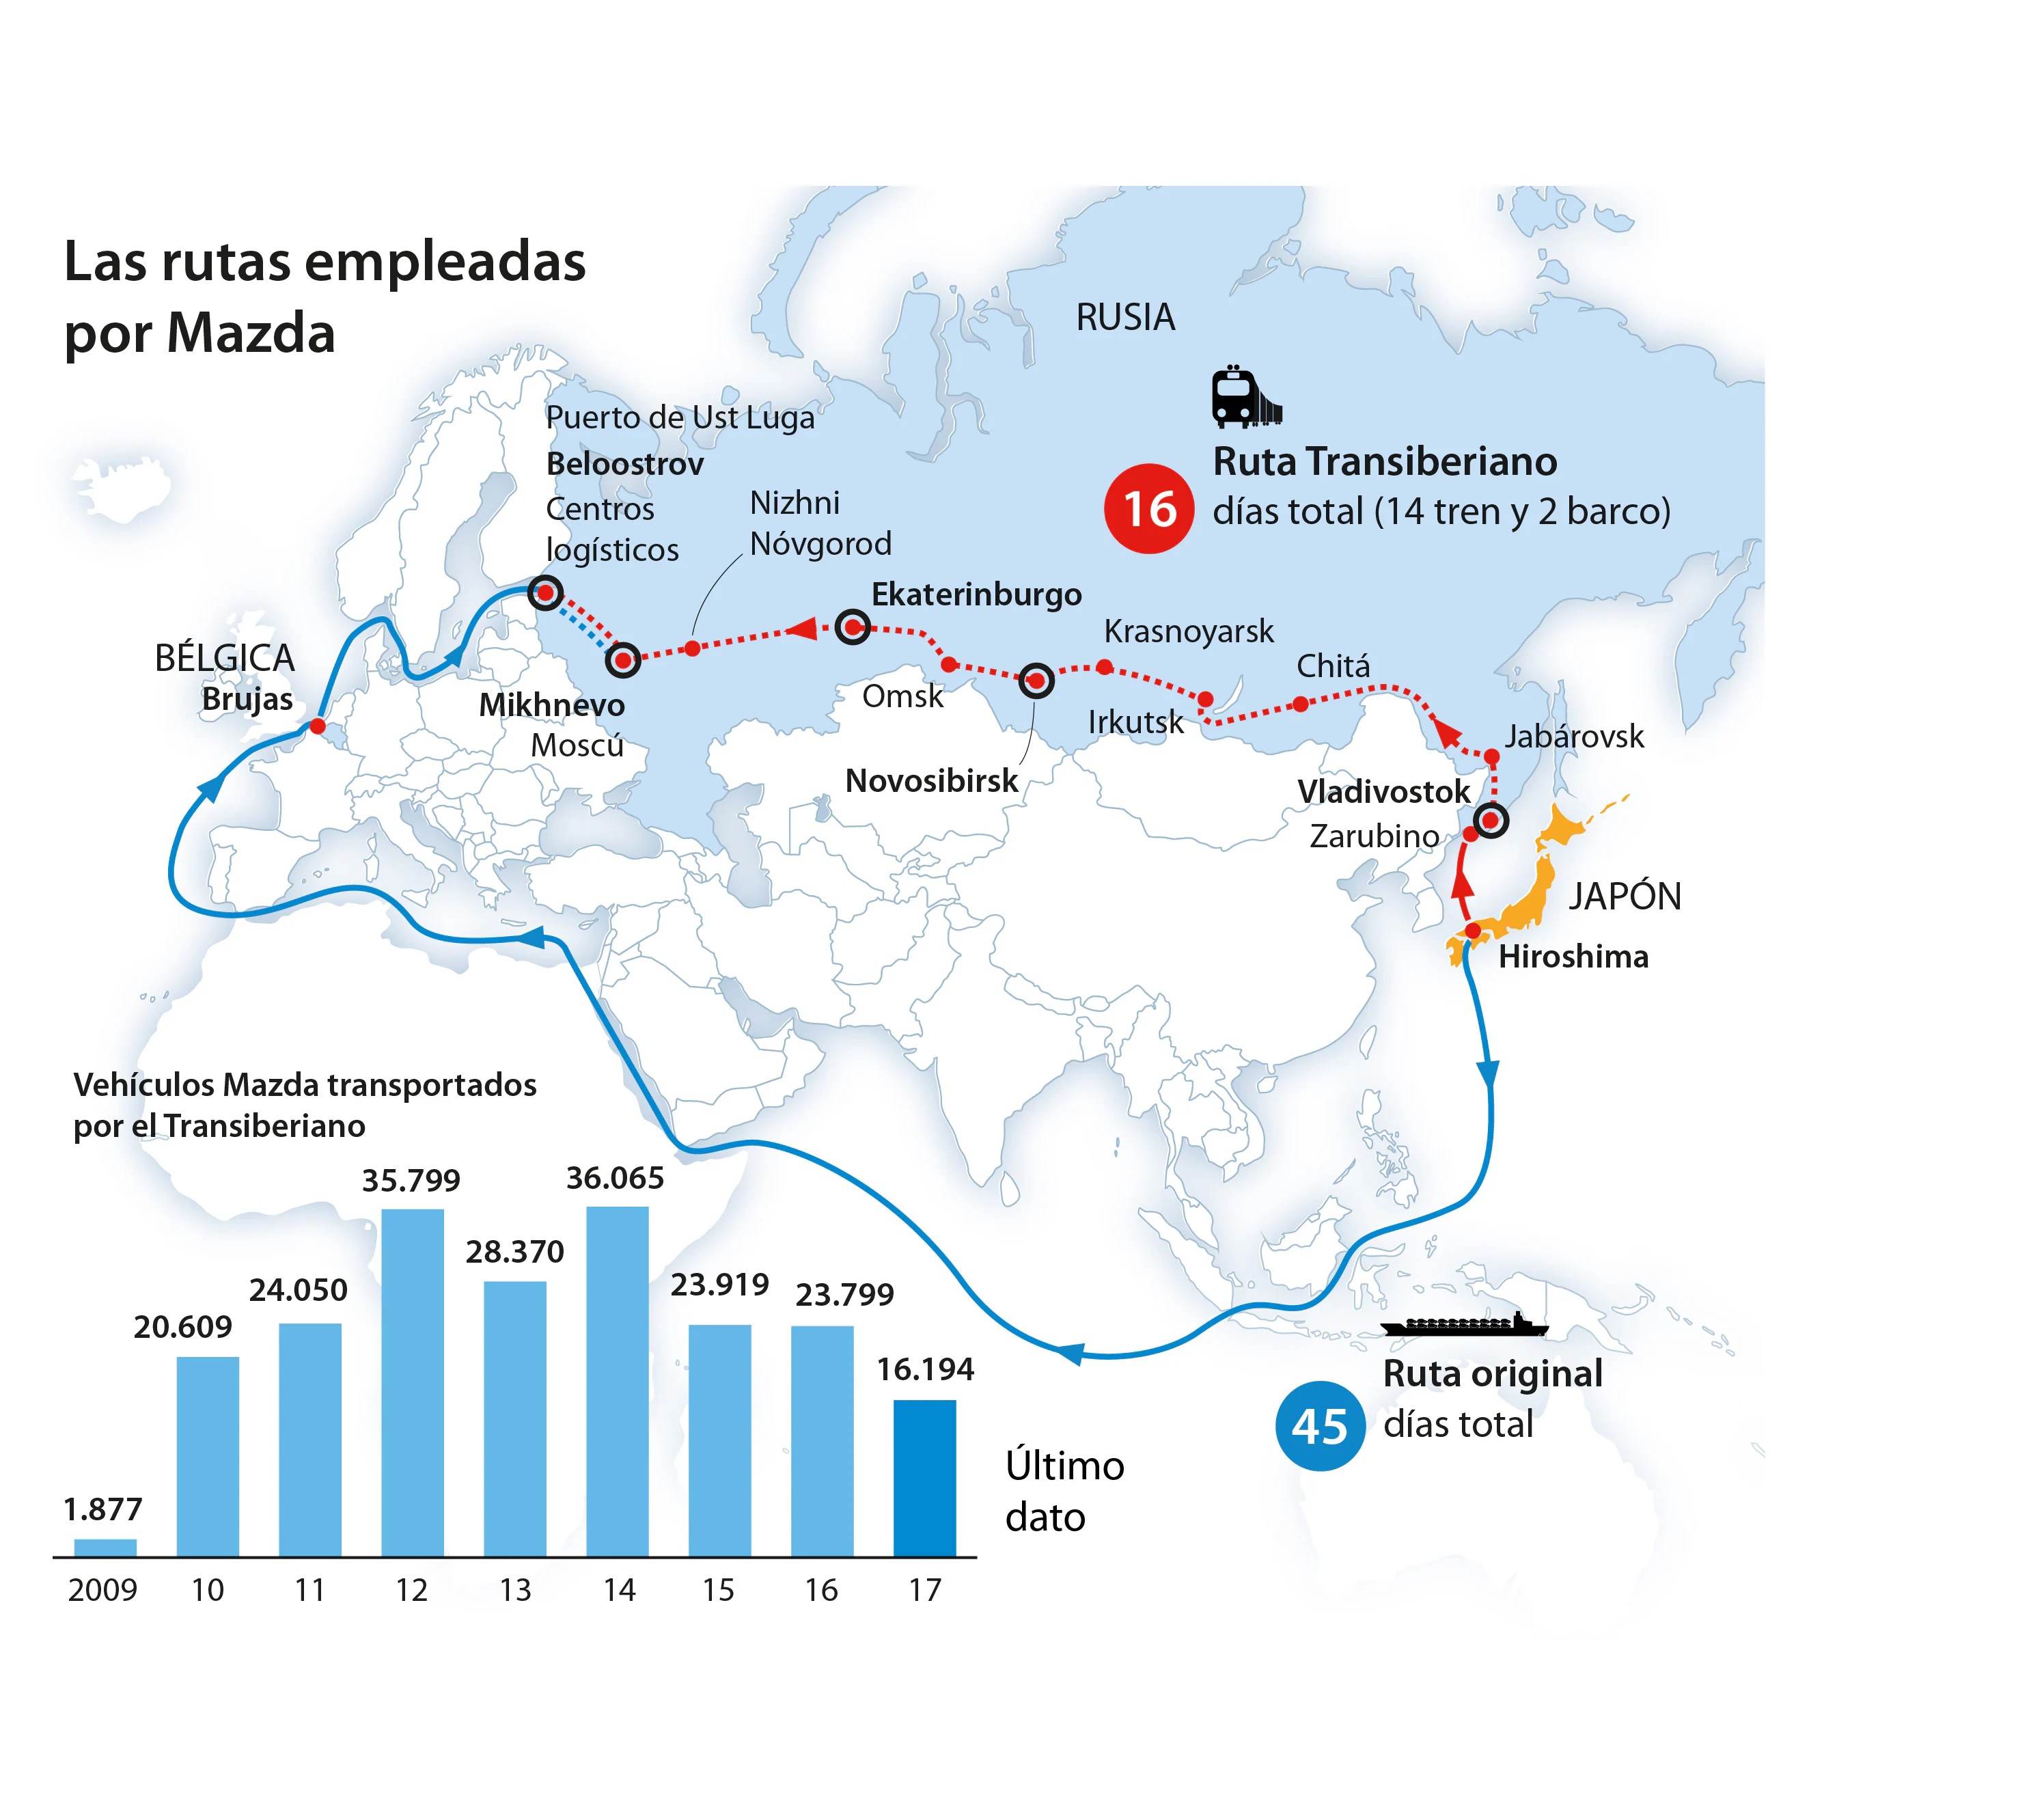 Mapa de las rutas empleadas por Mazda